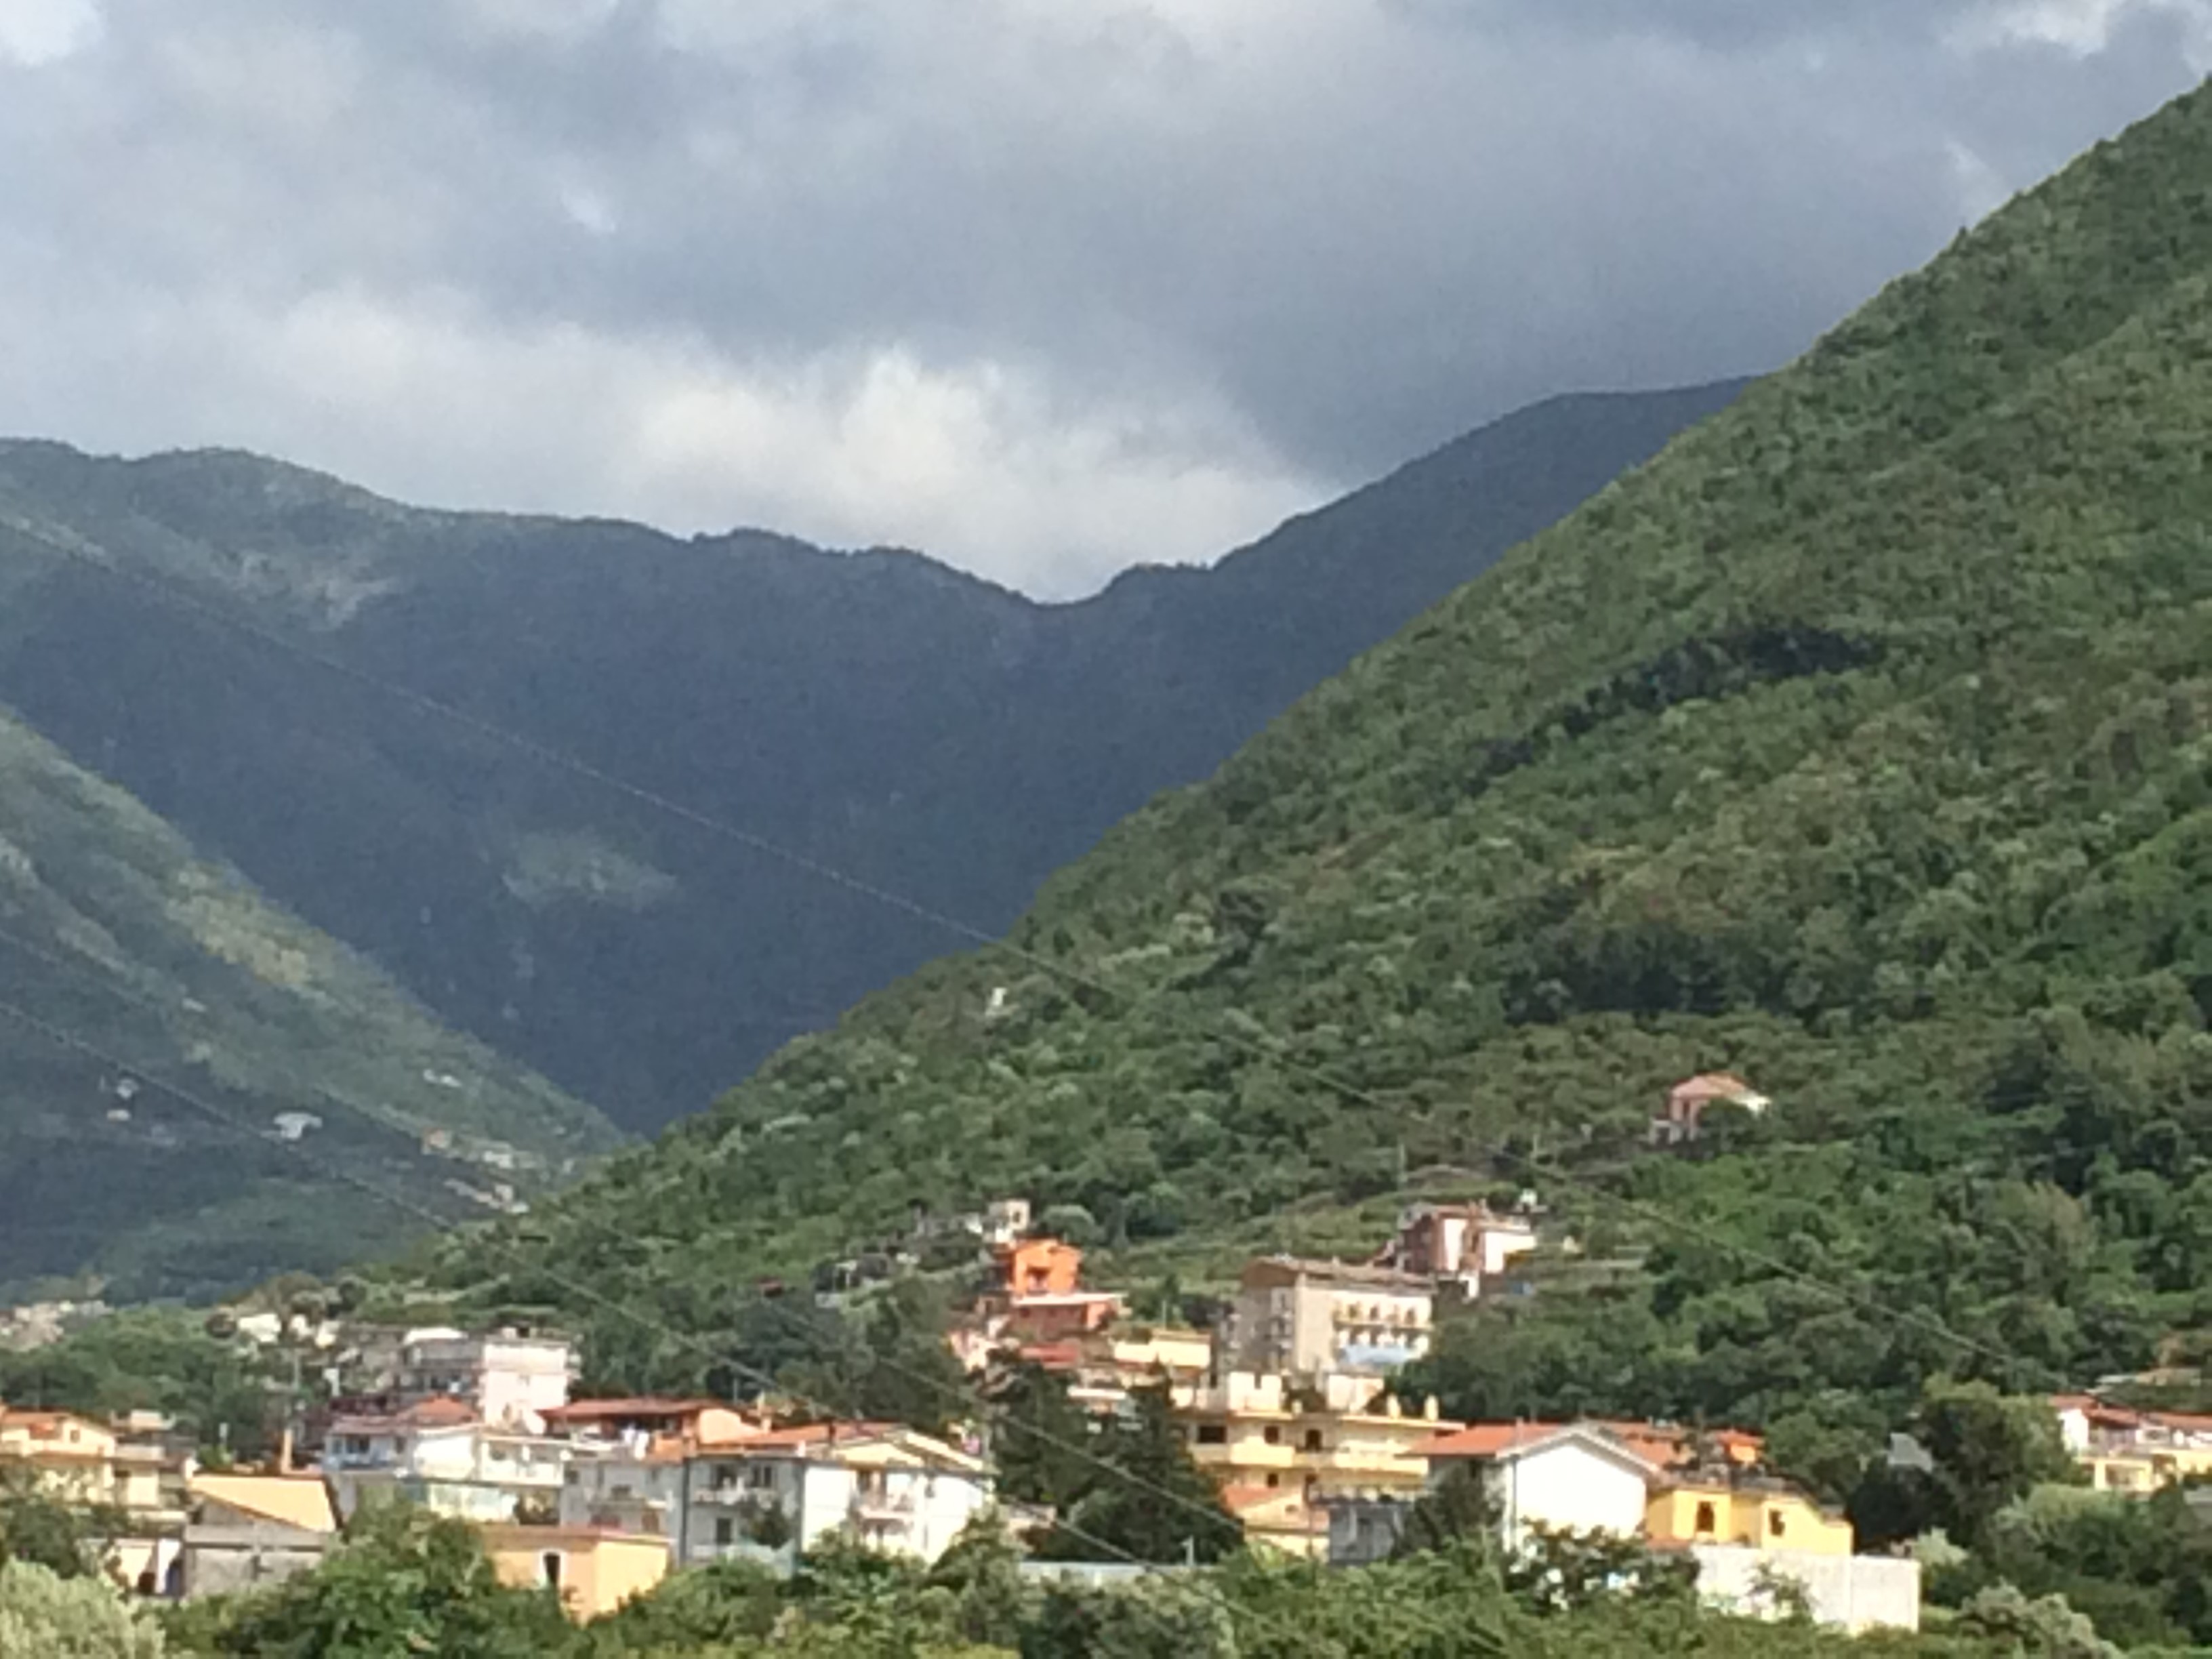  Focus sulla sanità a Gragnano, Beneduce (FI): “Una sanità da curare”